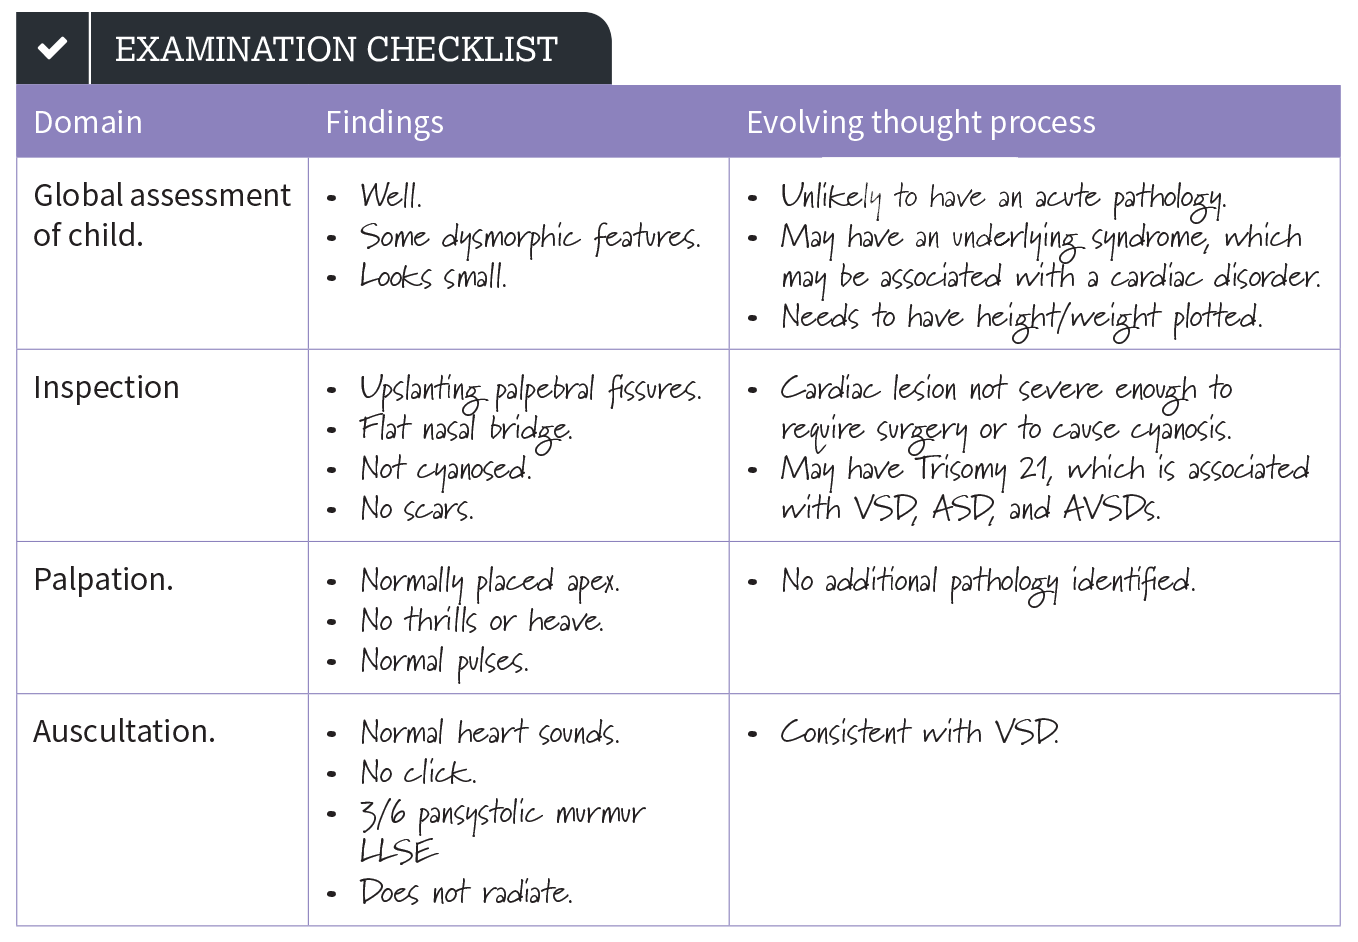 Examination Checklist image